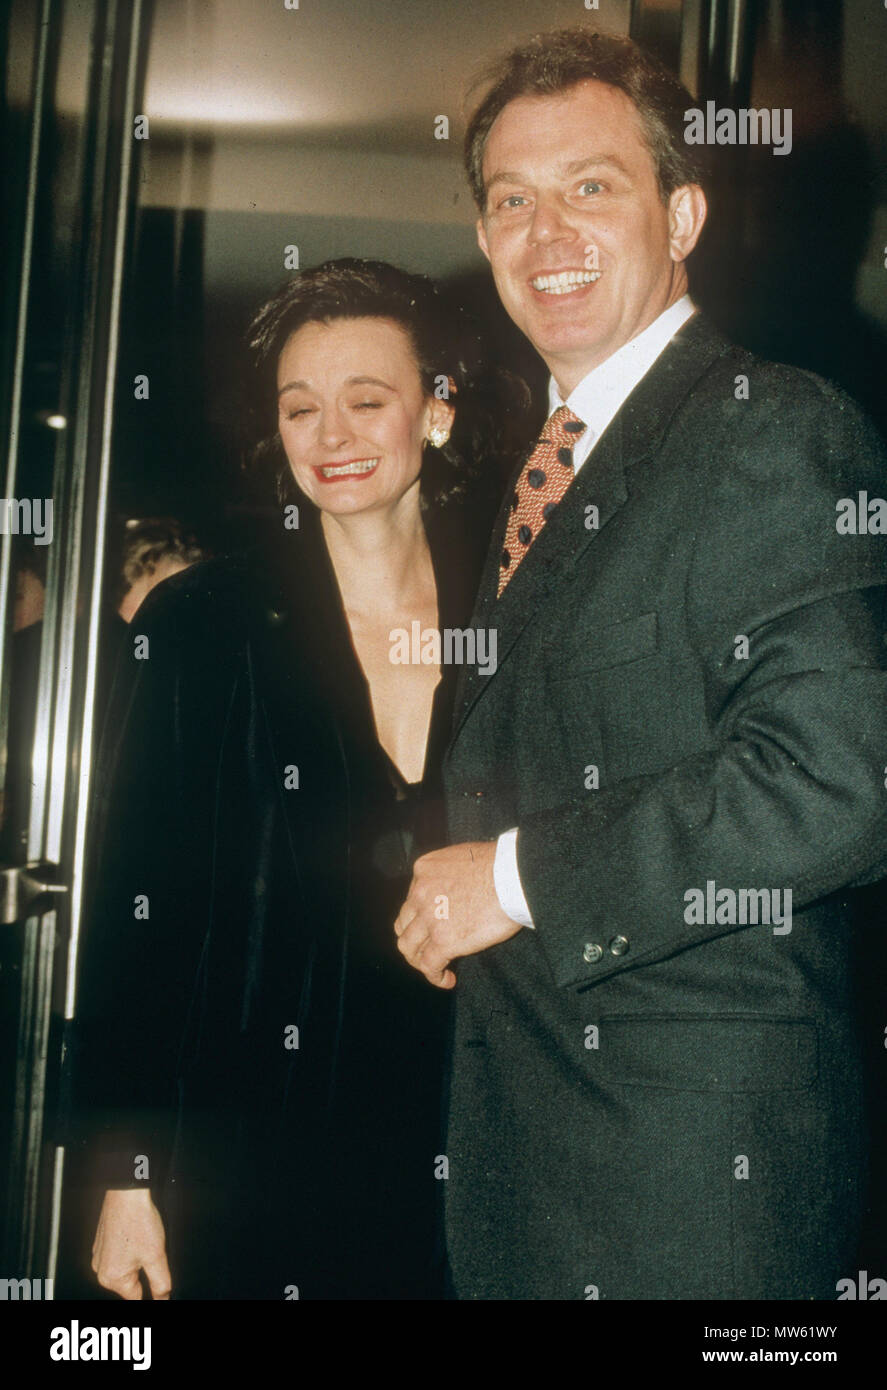 TONY BLAIR GROSSBRITANNIEN Politiker mit seiner Frau Cherie über 1995 Stockfoto